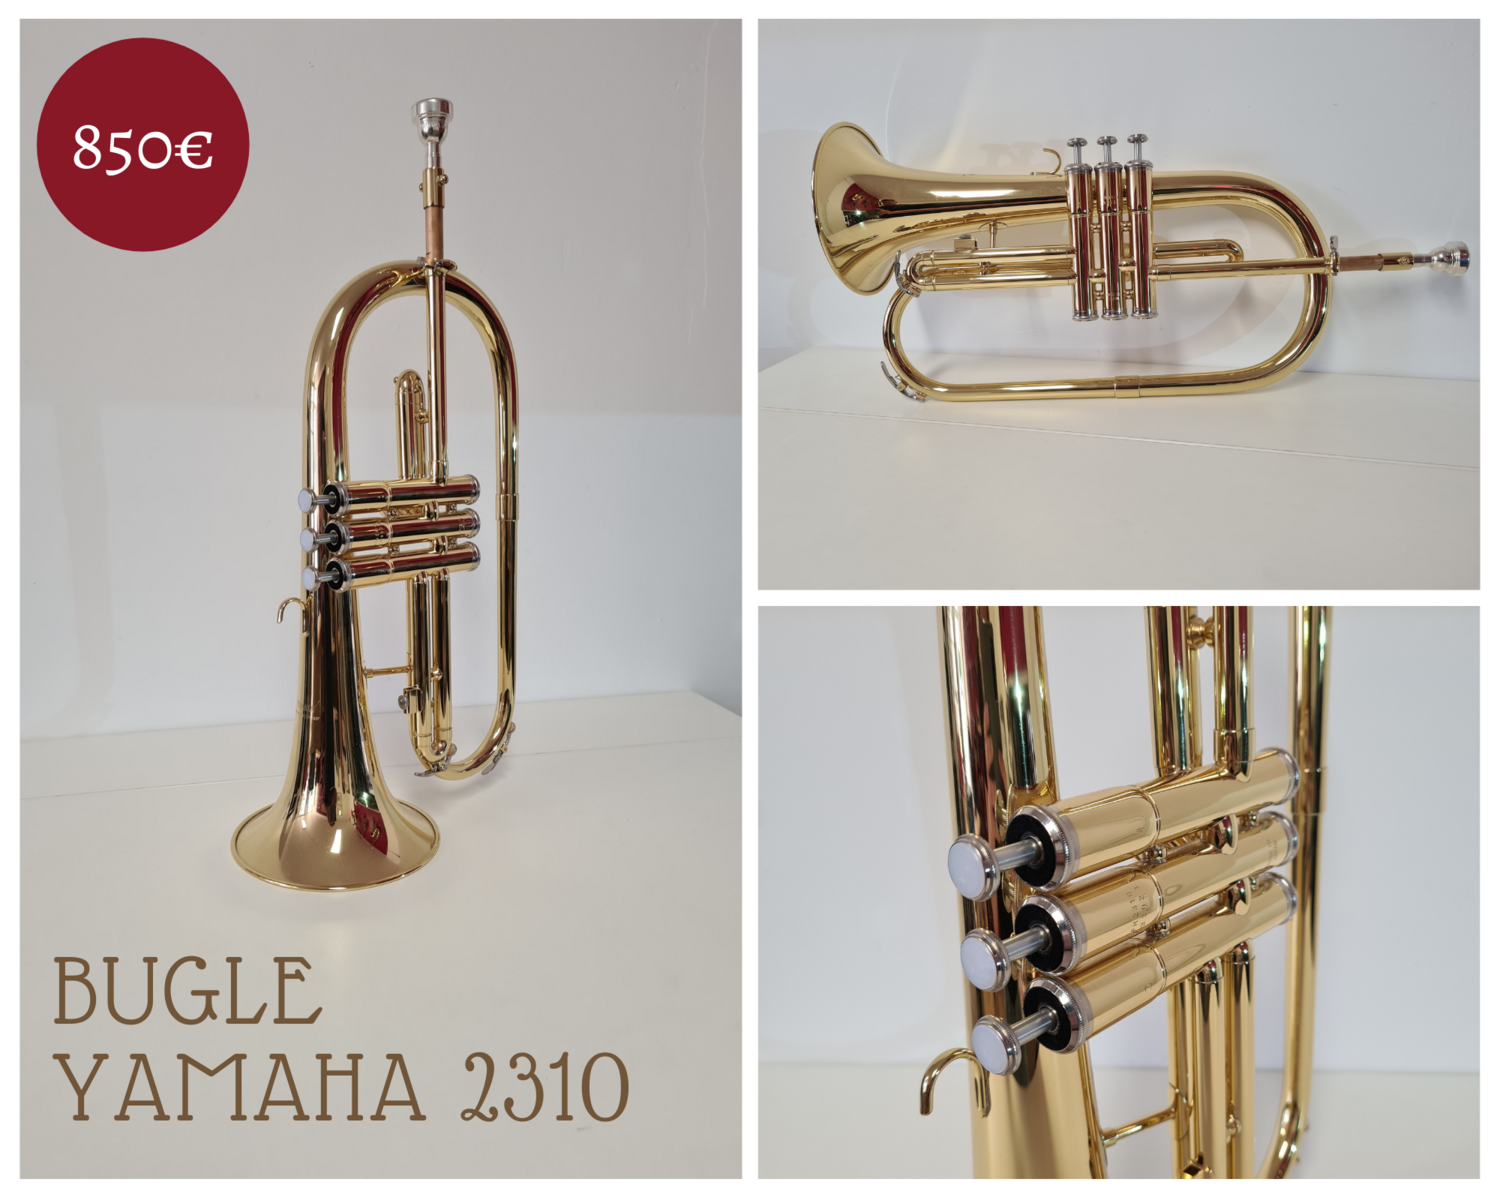 Bugle Yamaha 2310